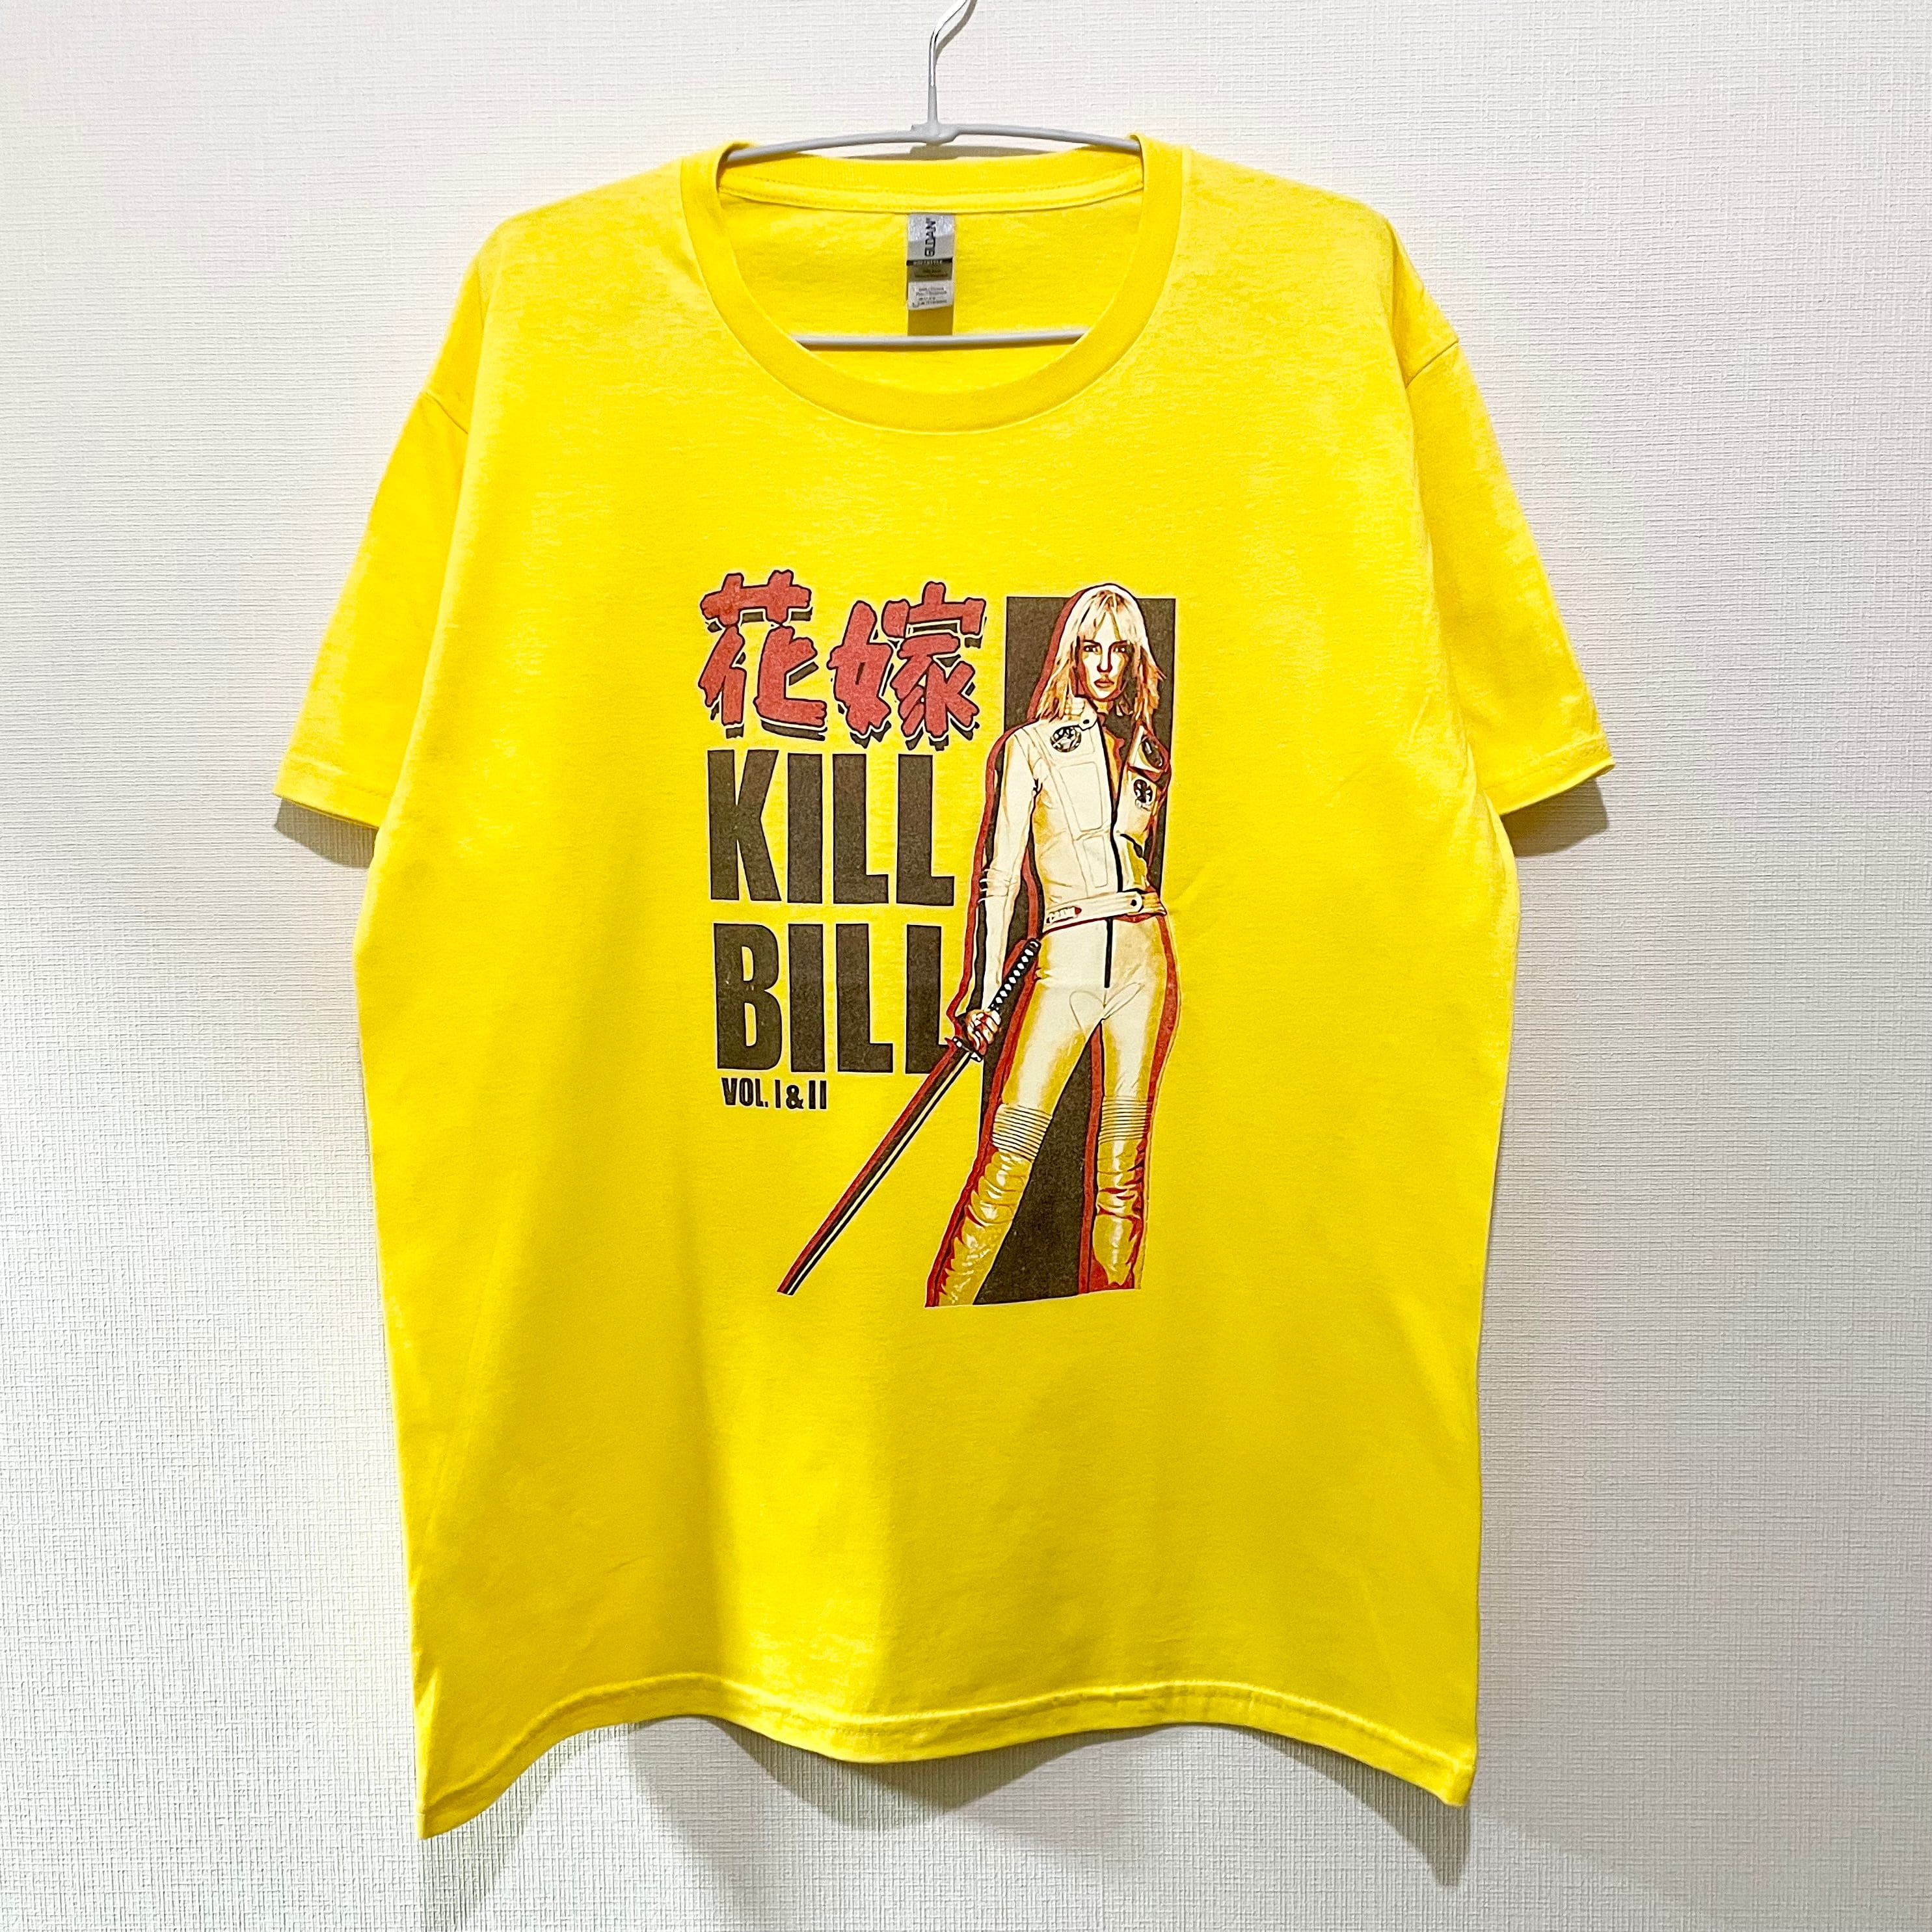 キルビル Tシャツ Kill Bill Tee アメカジ | BF MERCH'S